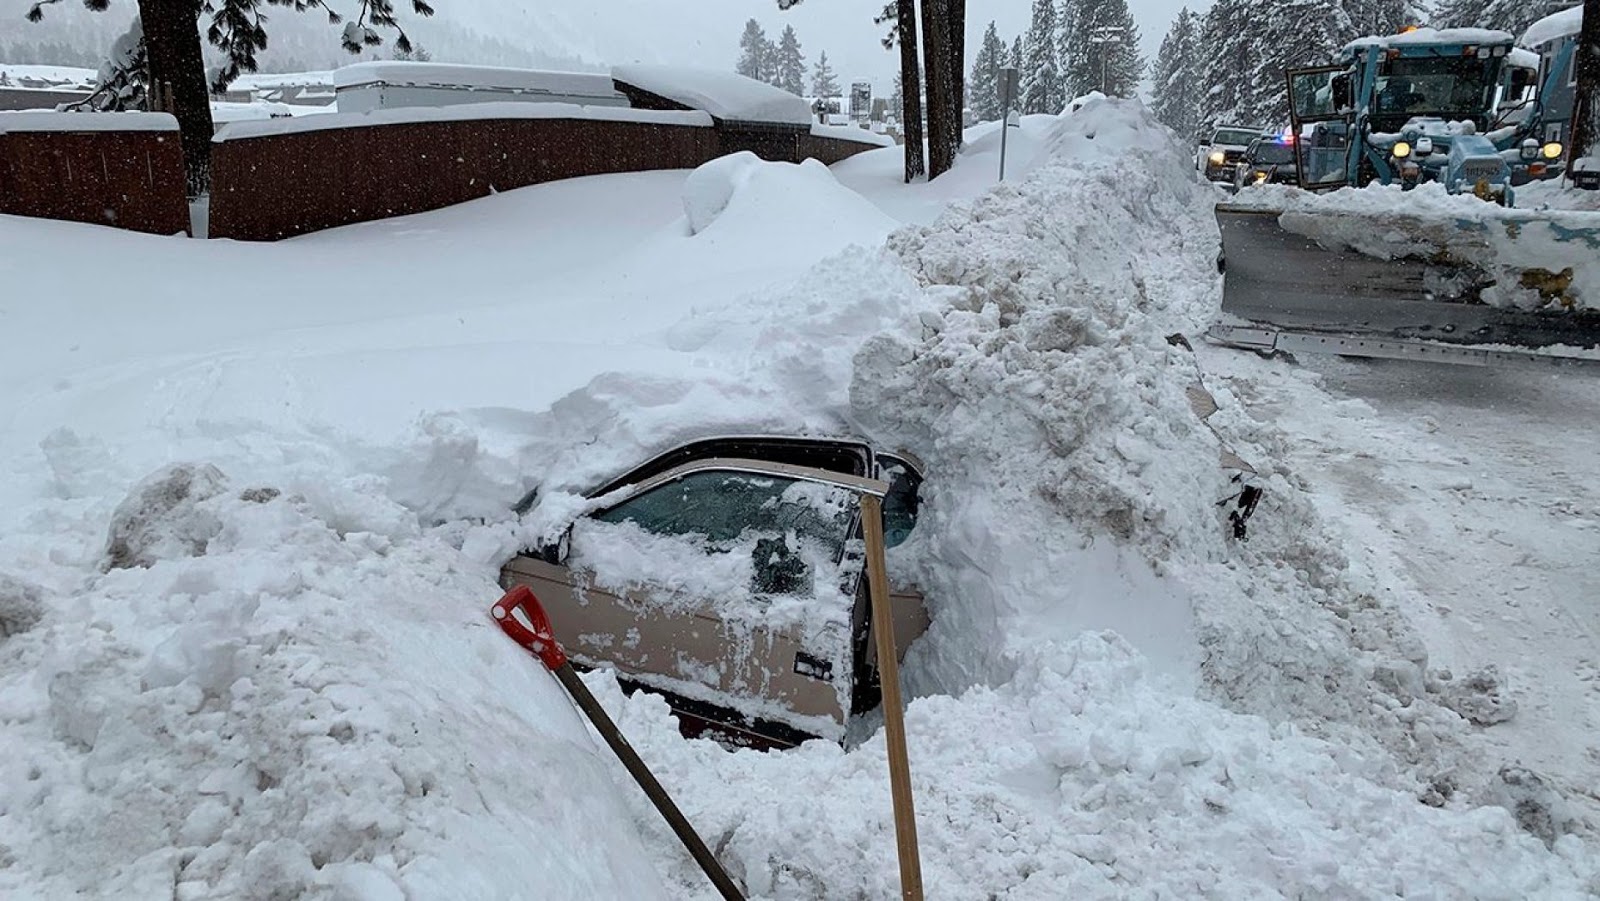 Вытащить из сугроба. Машину засыпало снегом. Машина завалена снегом. Откапывает машину. Машина в сугробе.